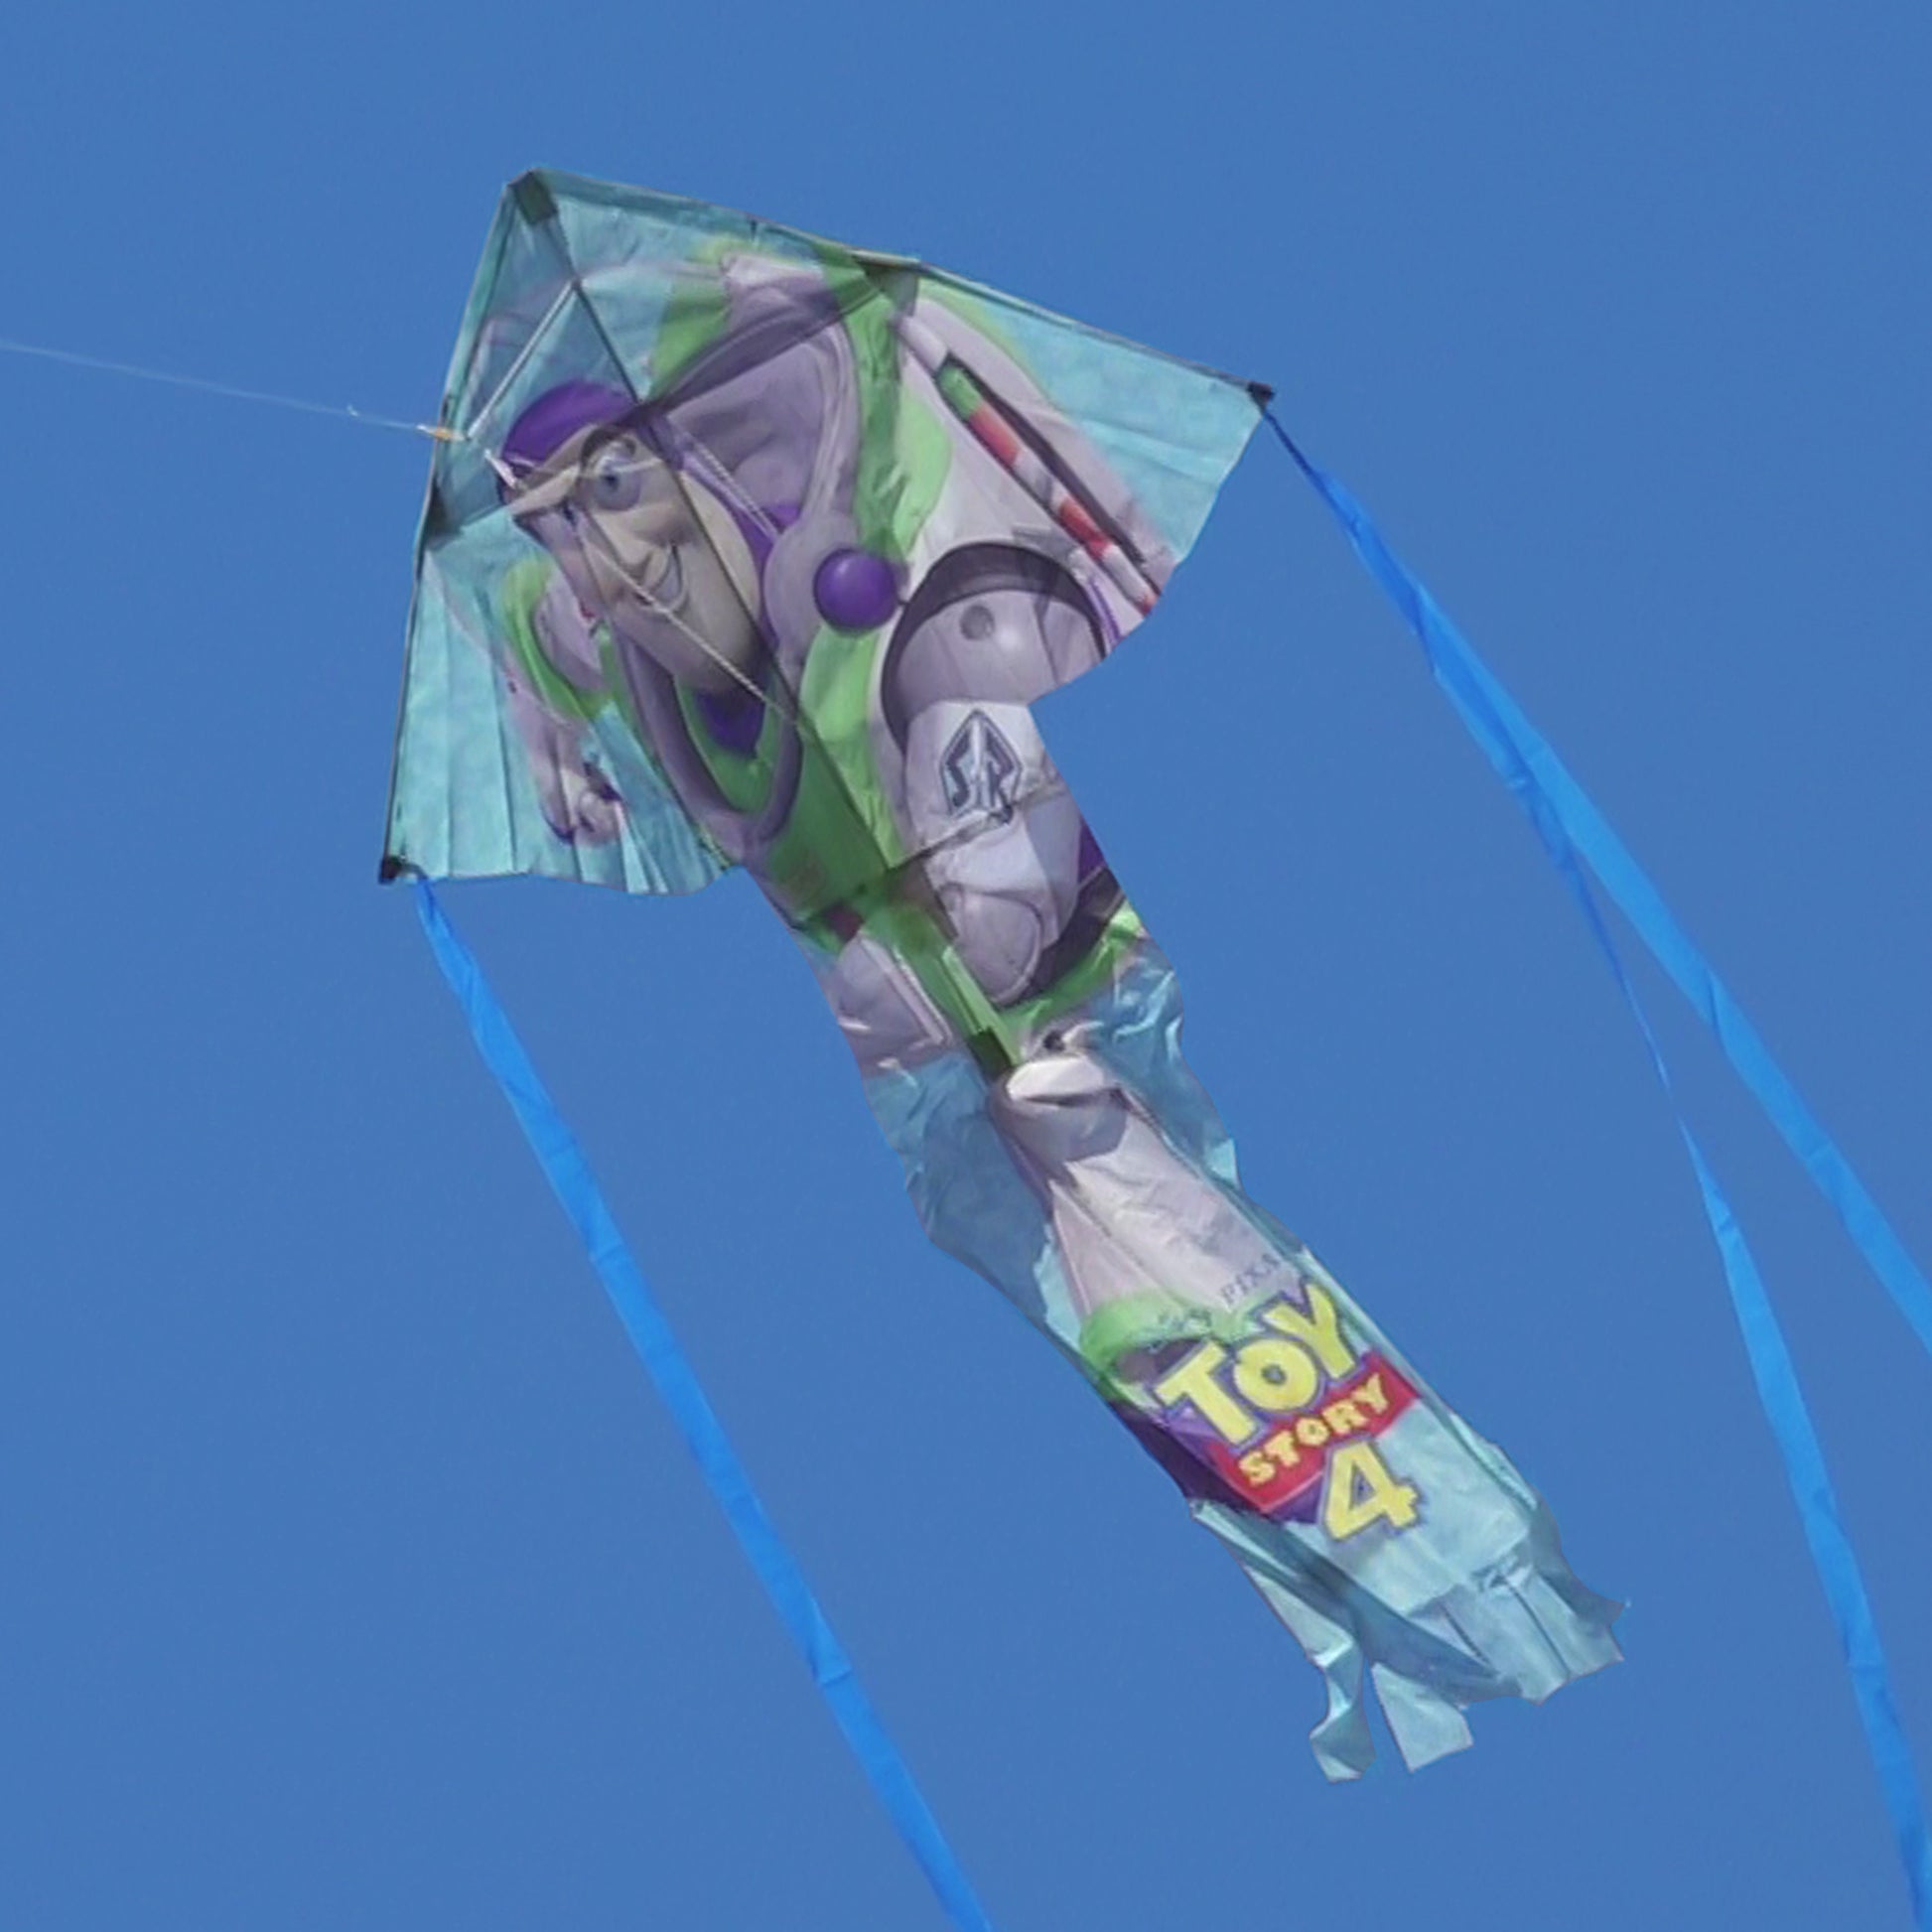 X Kites skyflier buzz lightyear nylon kite flying